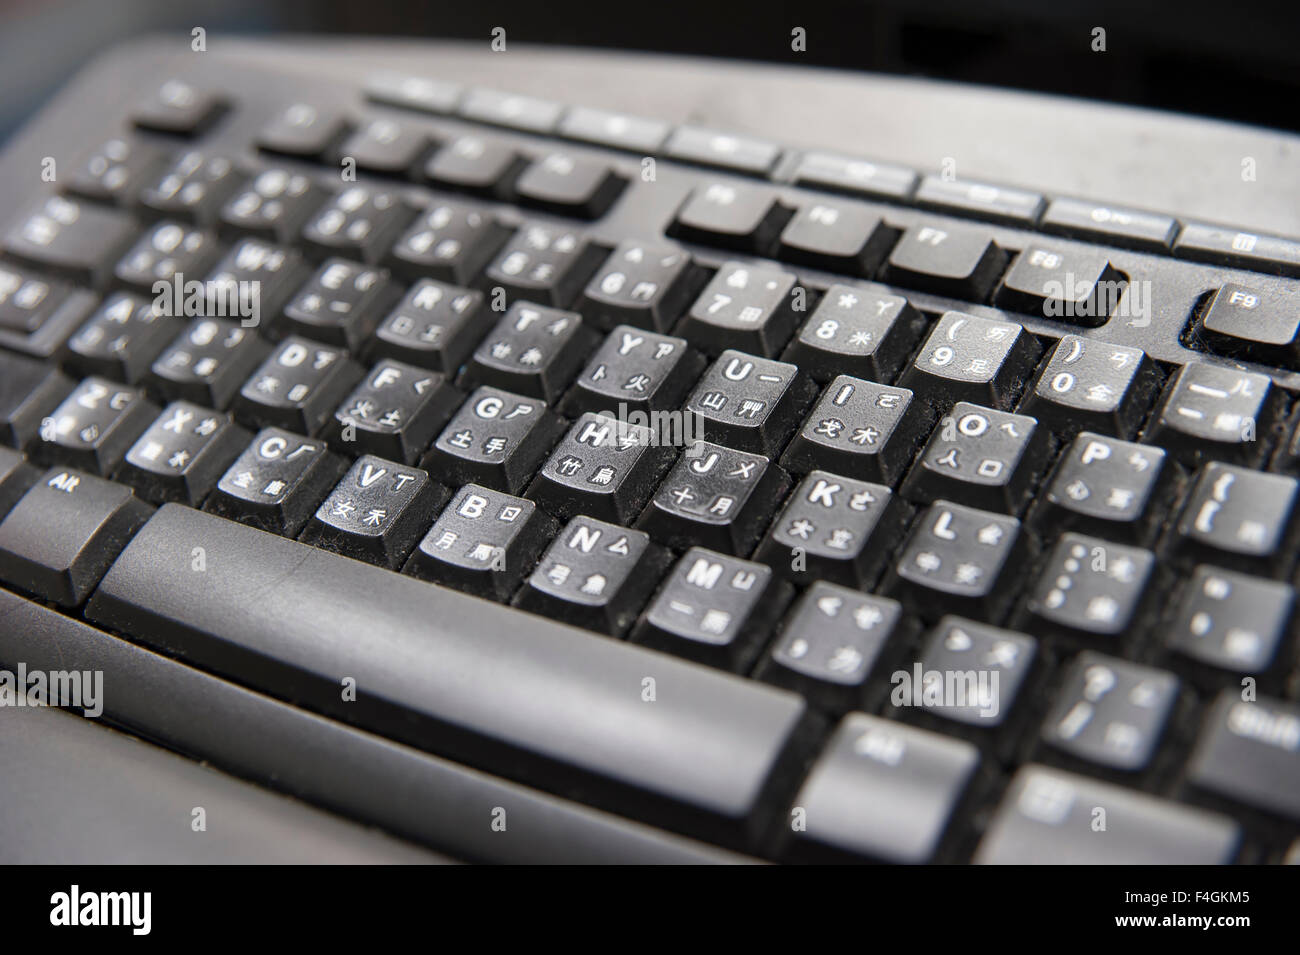 Special keyboard Banque de photographies et d'images à haute résolution -  Alamy